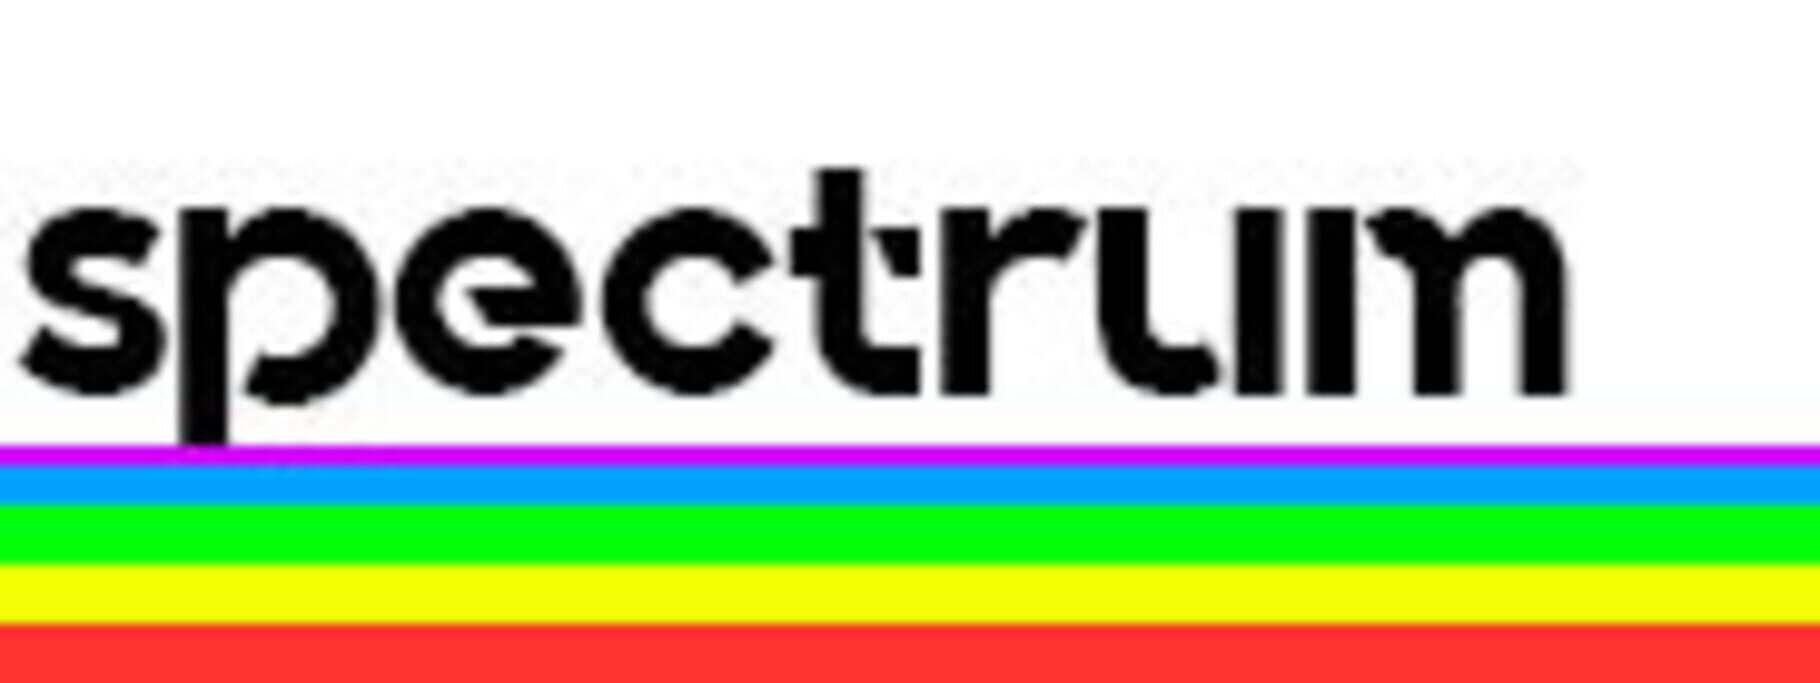 Spectrum™ screenshots